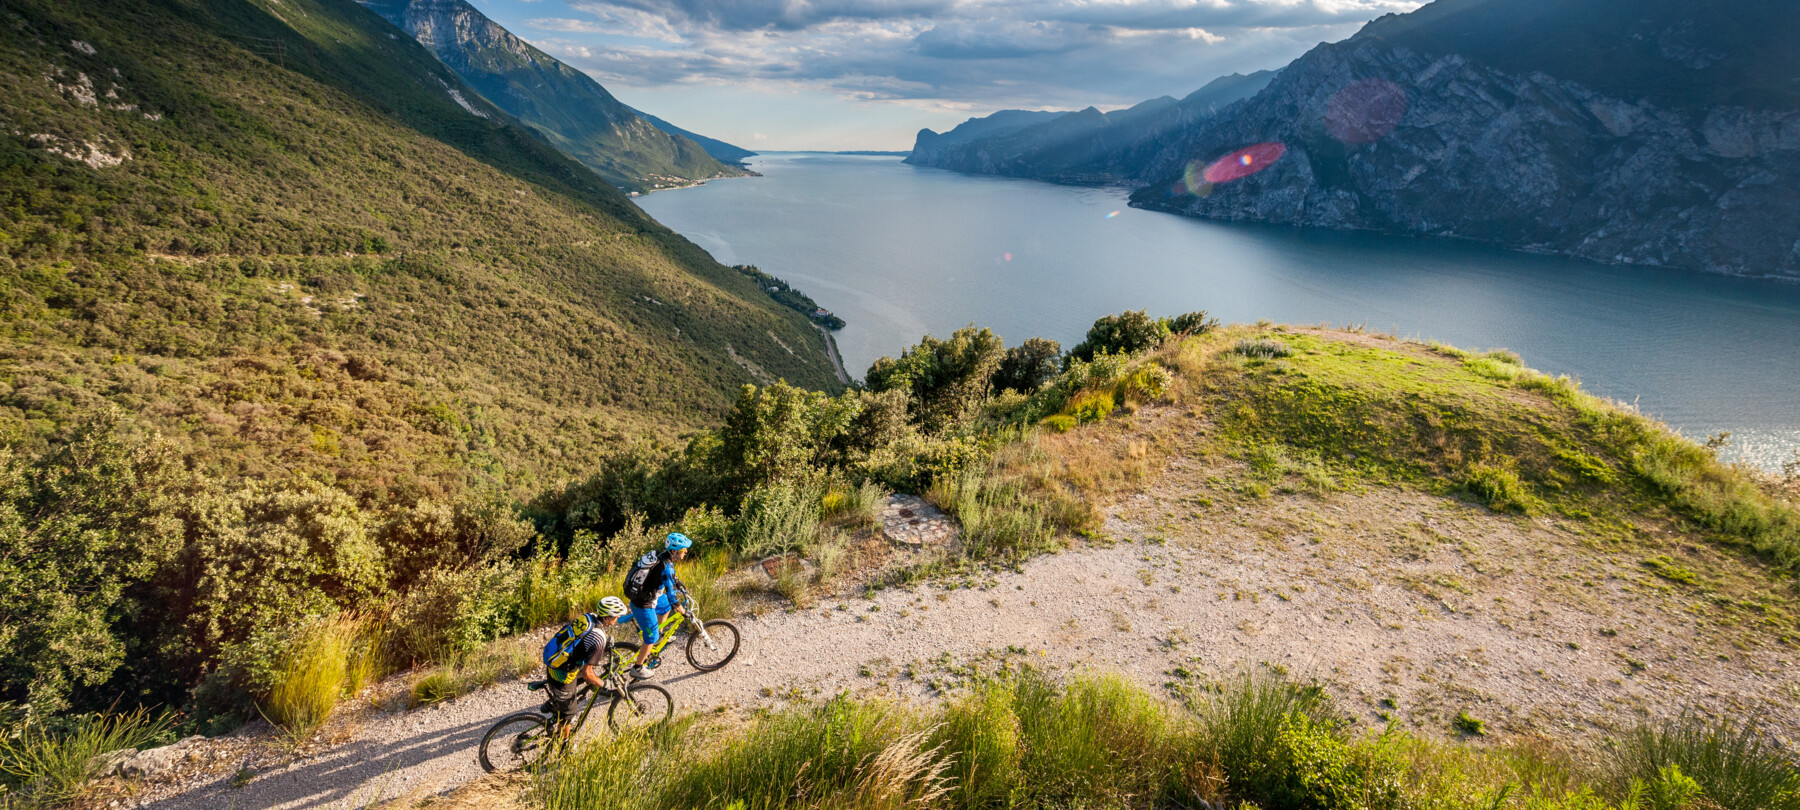 De DoGa-fietsroute: fietsen van de Dolomieten naar het Gardameer